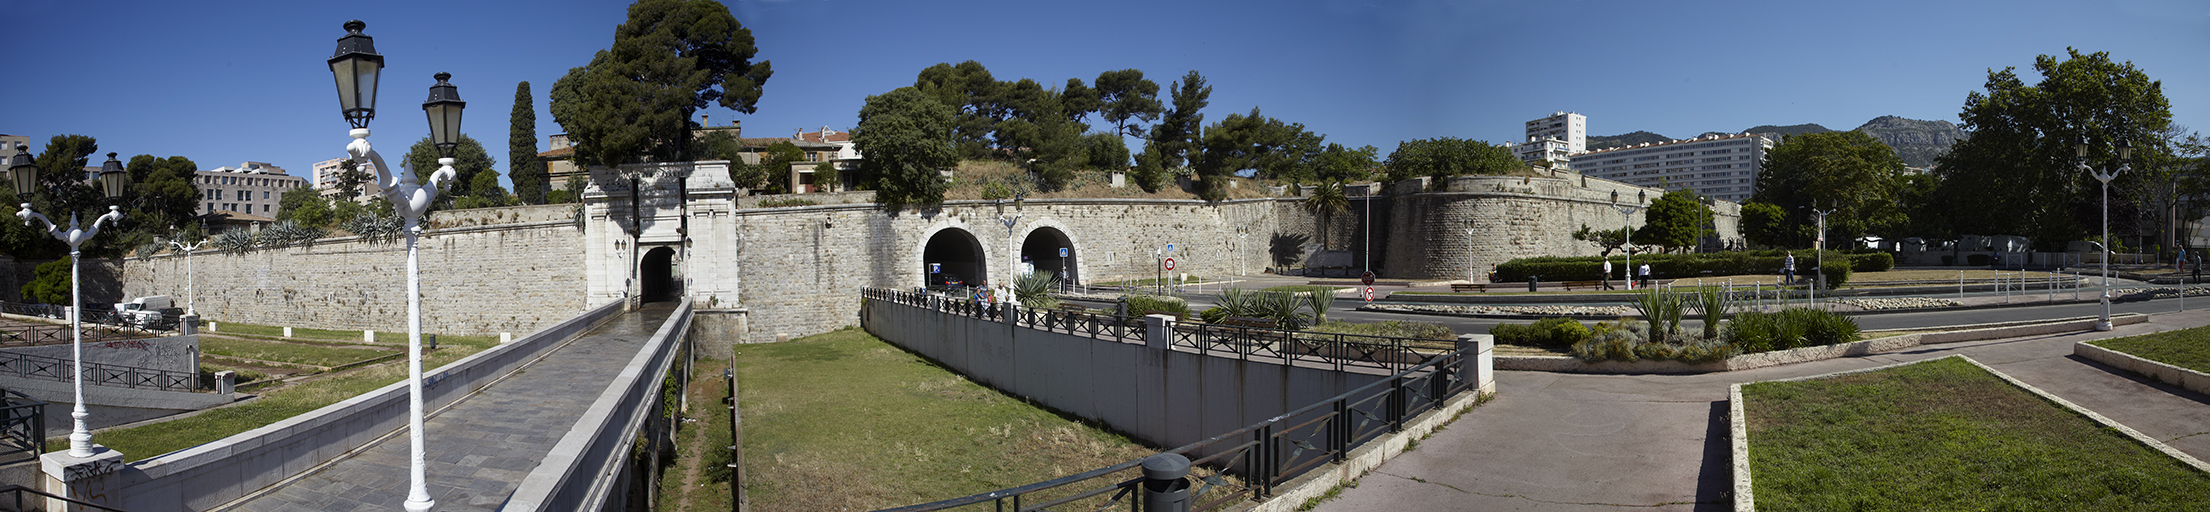 Porte d'Italie. Vue panoramique de la courtine 6-7, de la porte d'Italie et des terrassements et voies dans l'ancien fossé.